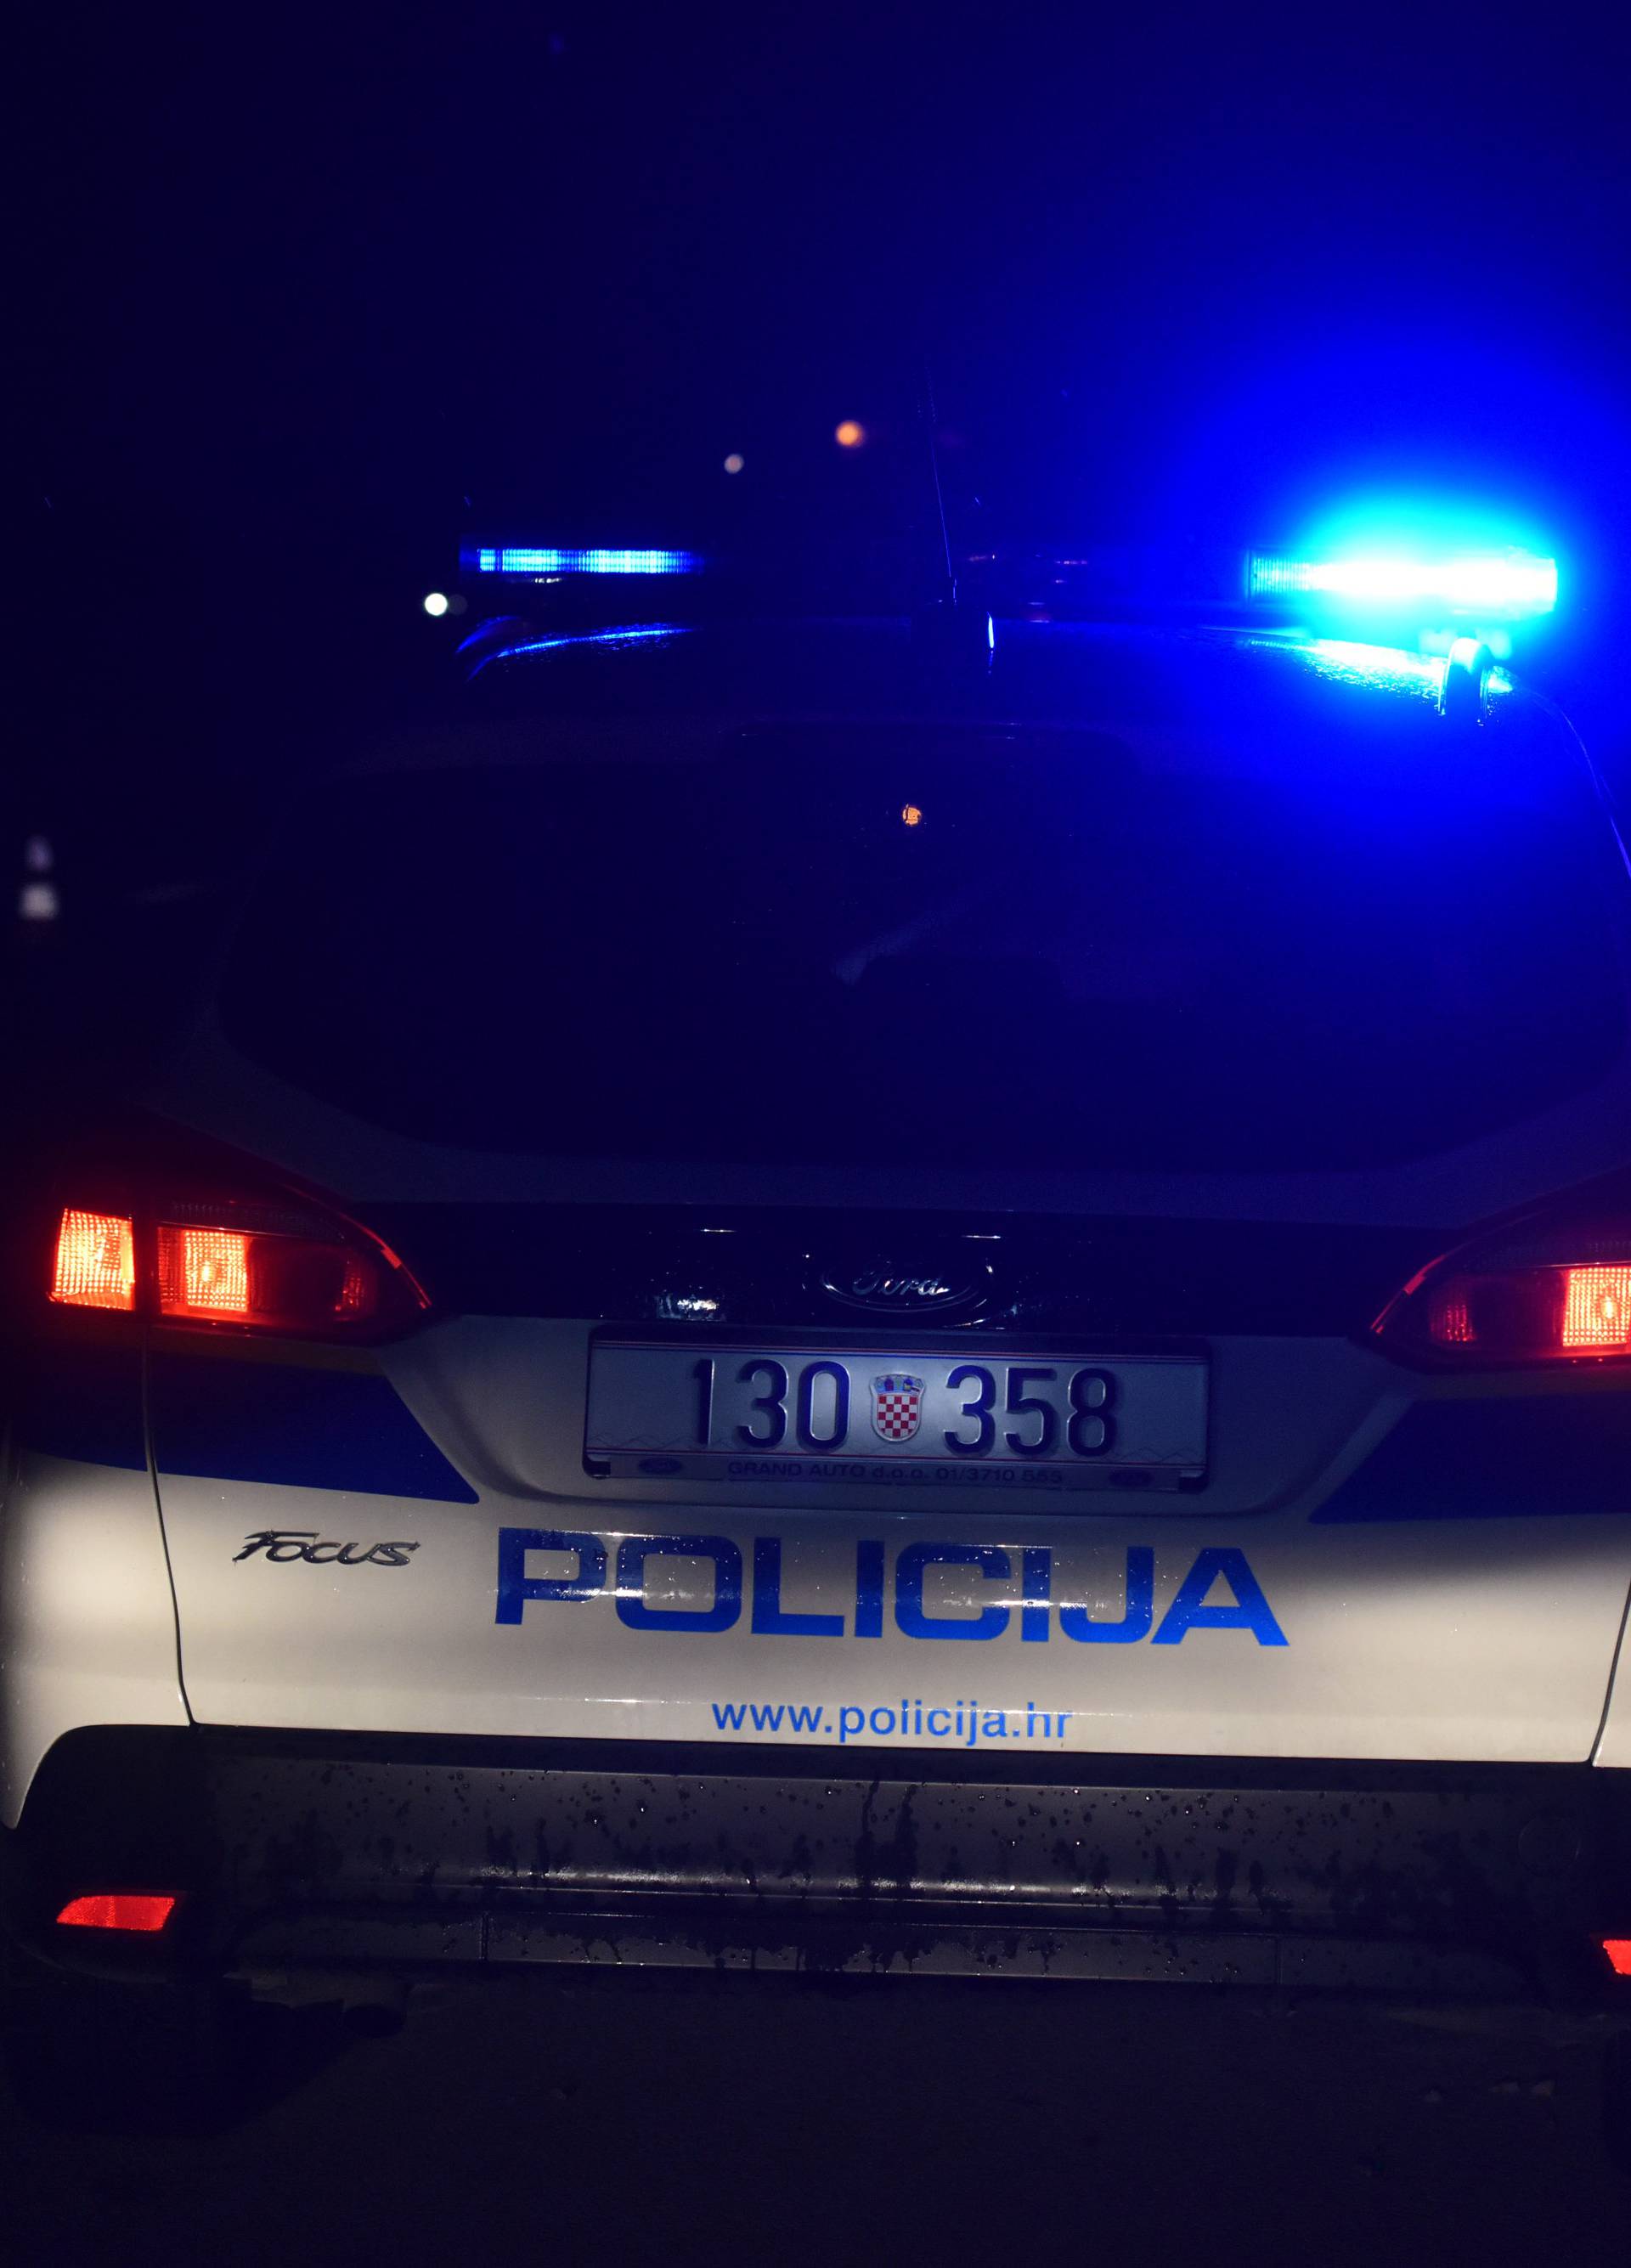 Ubojstvo u Gaćelezima: Policija uhitila osumnjičenog muškarca